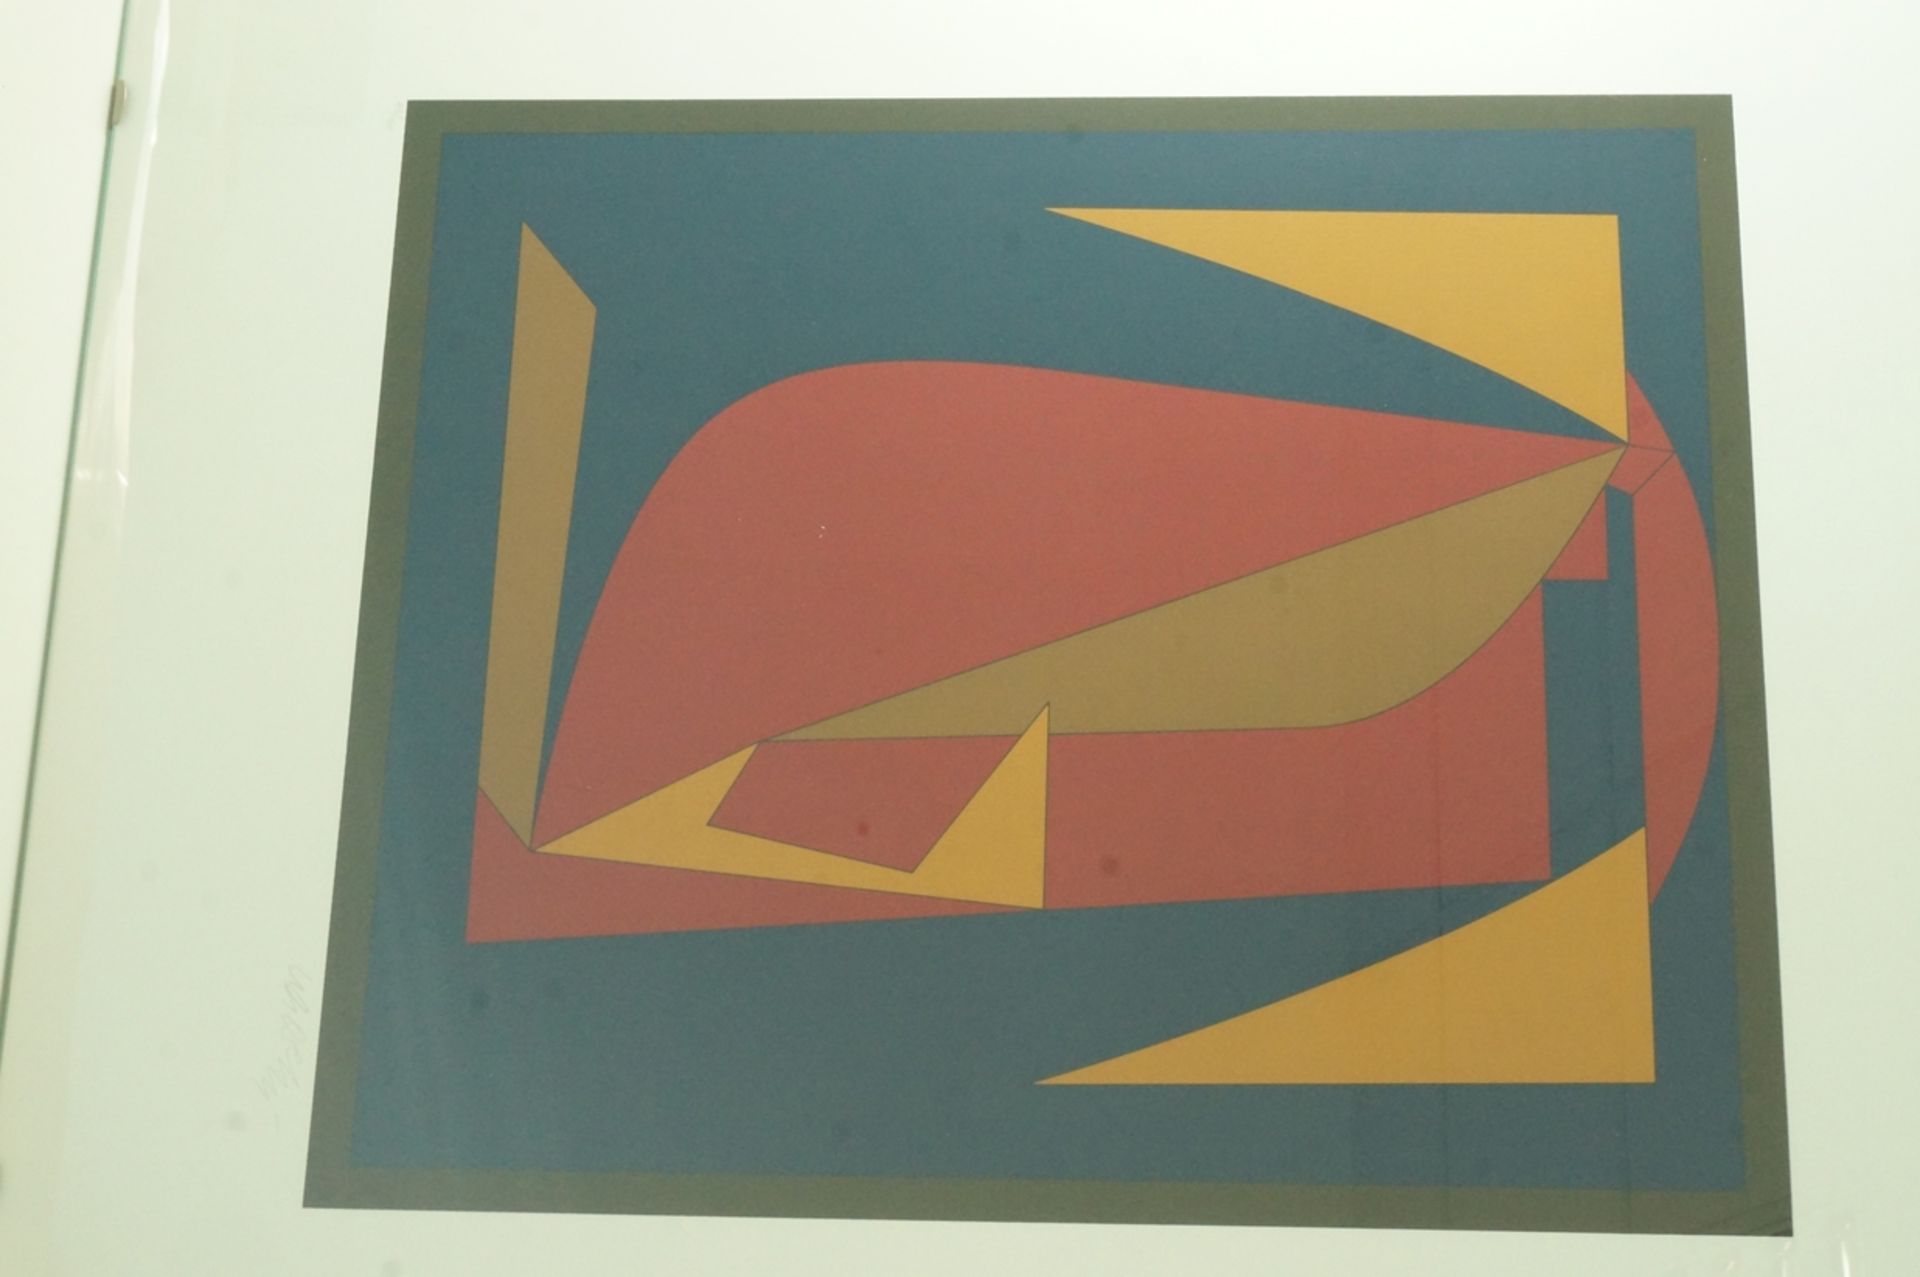 Farbserigraphie von Victor Vasarely (1906-1997); "Zombor", gedruckt 1982, hier u.l. bez. Blatt 43 v - Bild 3 aus 8